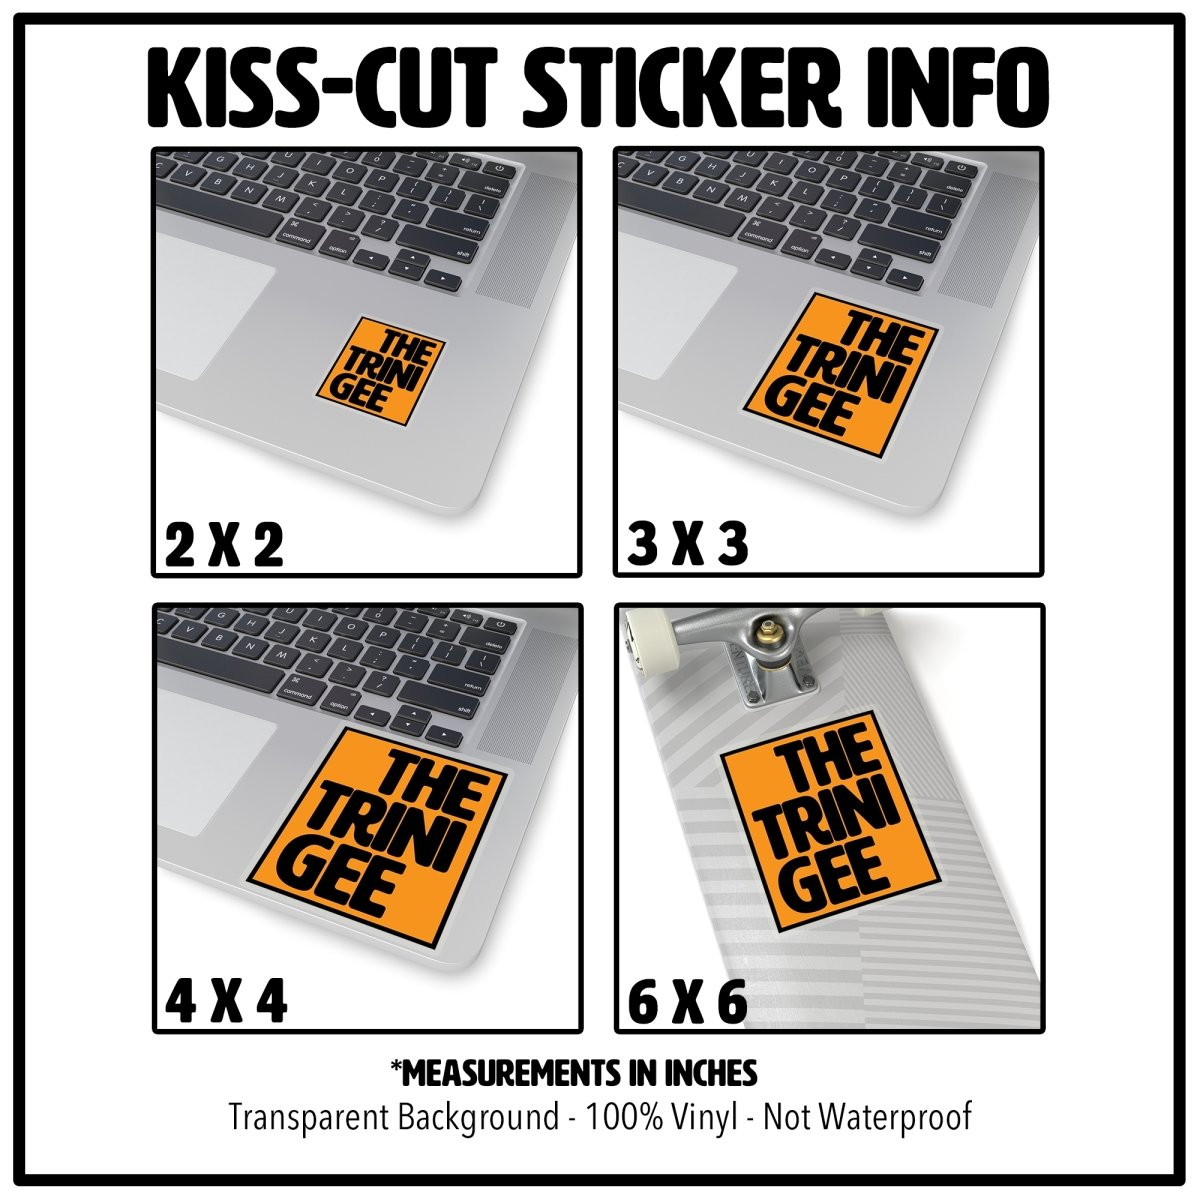 Dear Black Girl Kiss-Cut Stickers - The Trini Gee